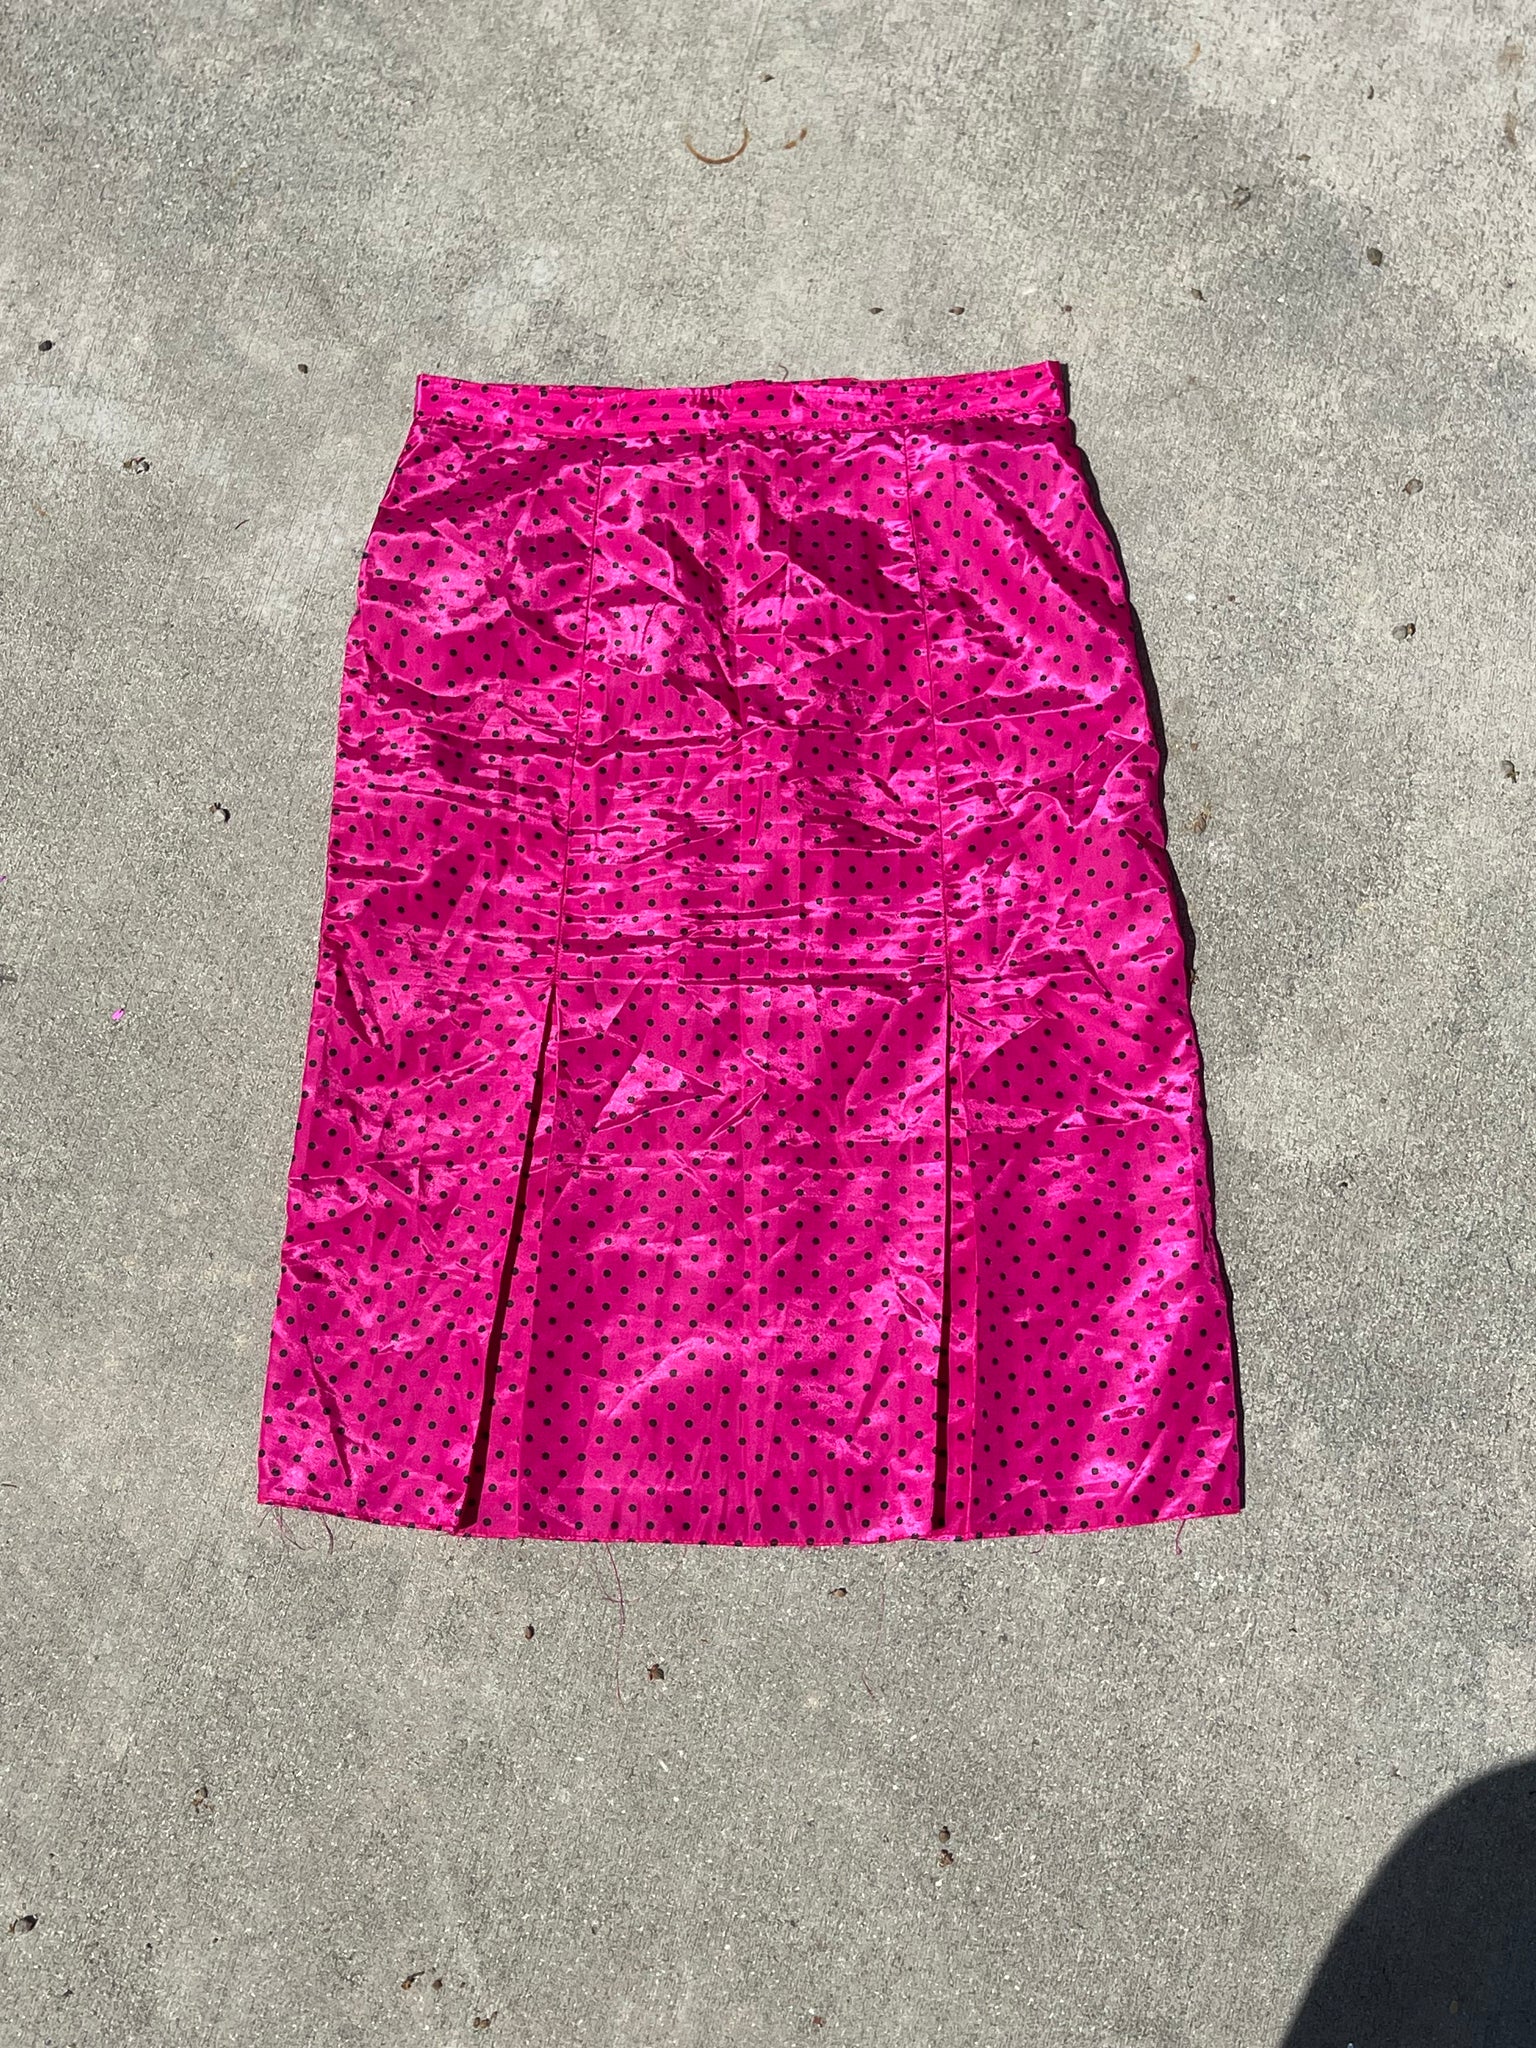 vintage polka dot skirt